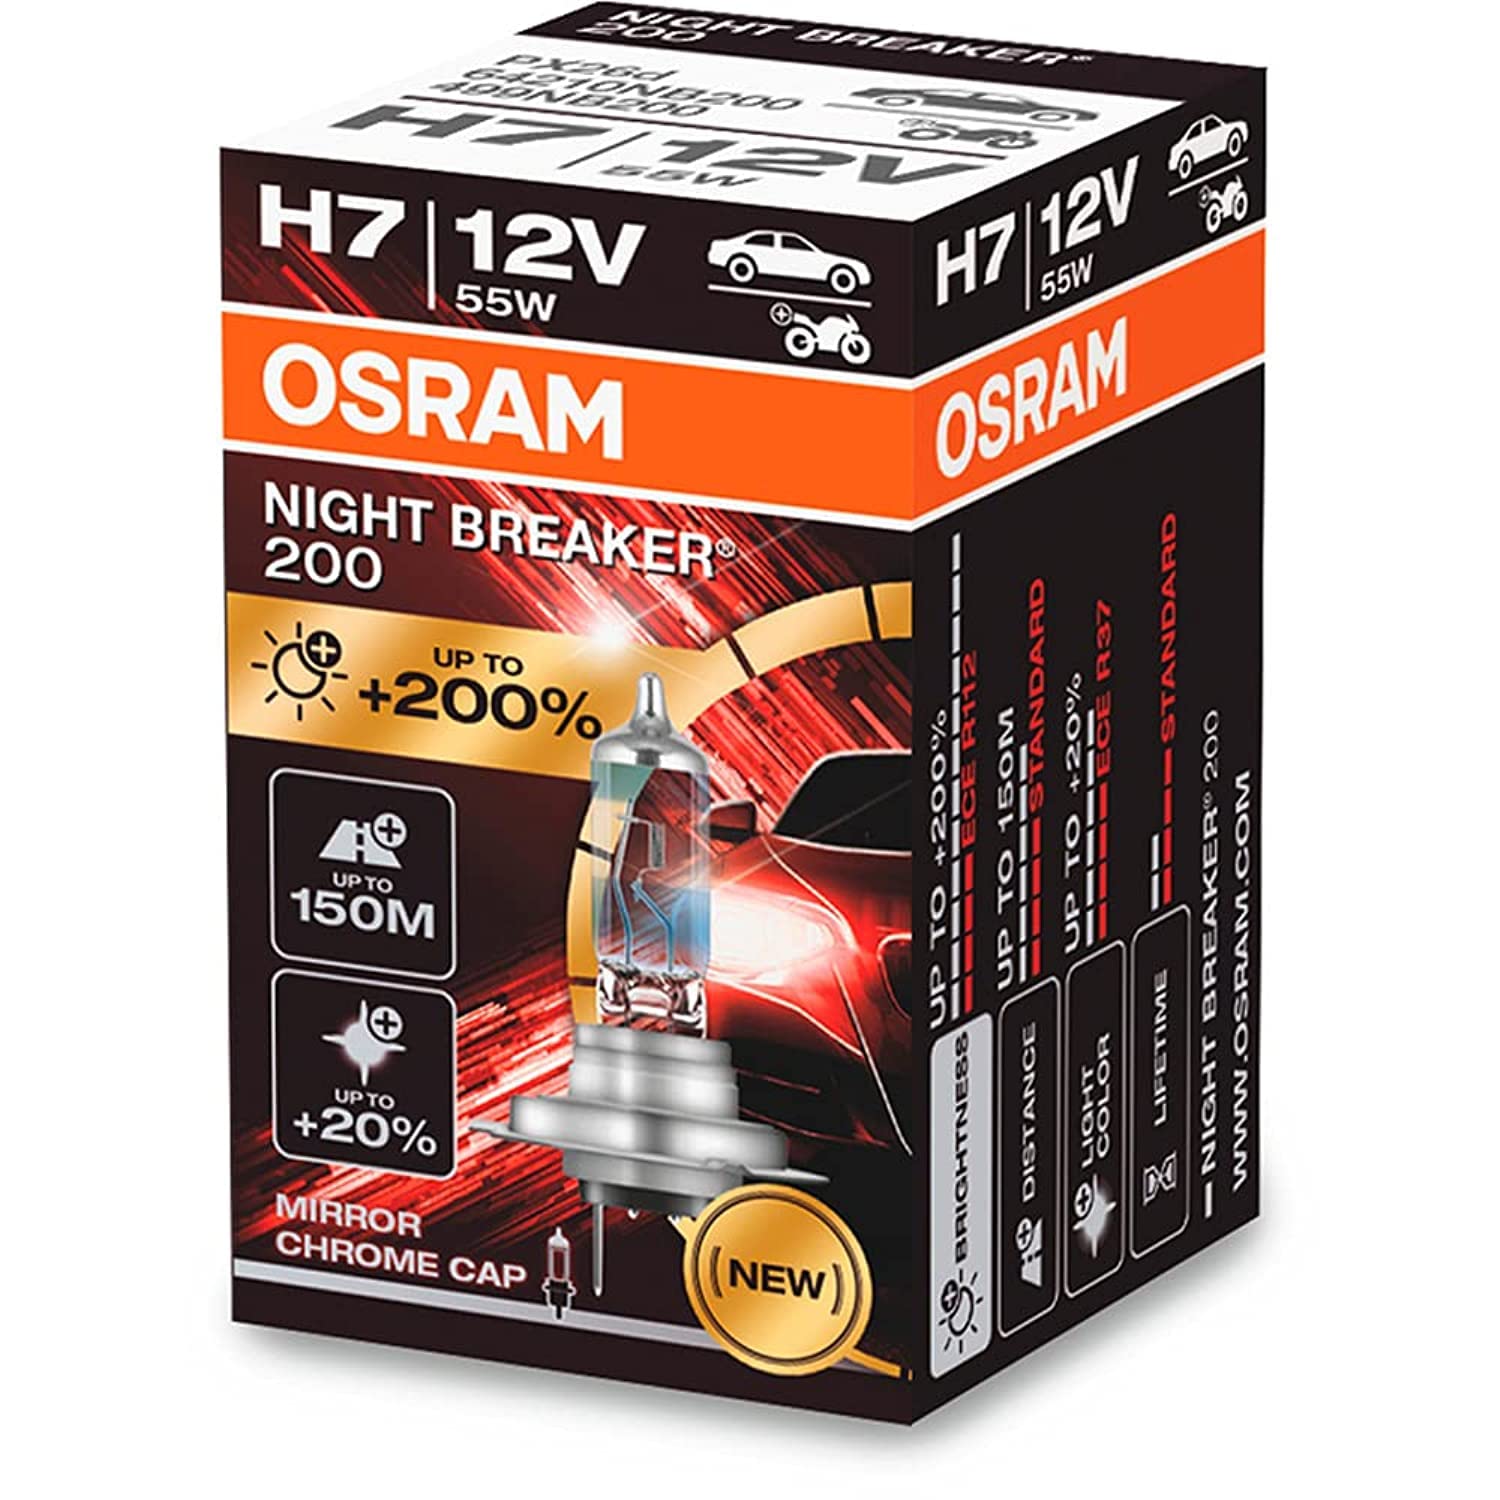 Osram Night Breaker 200 Laser Halogen Birne - H7 - 12V/55W - pro stück